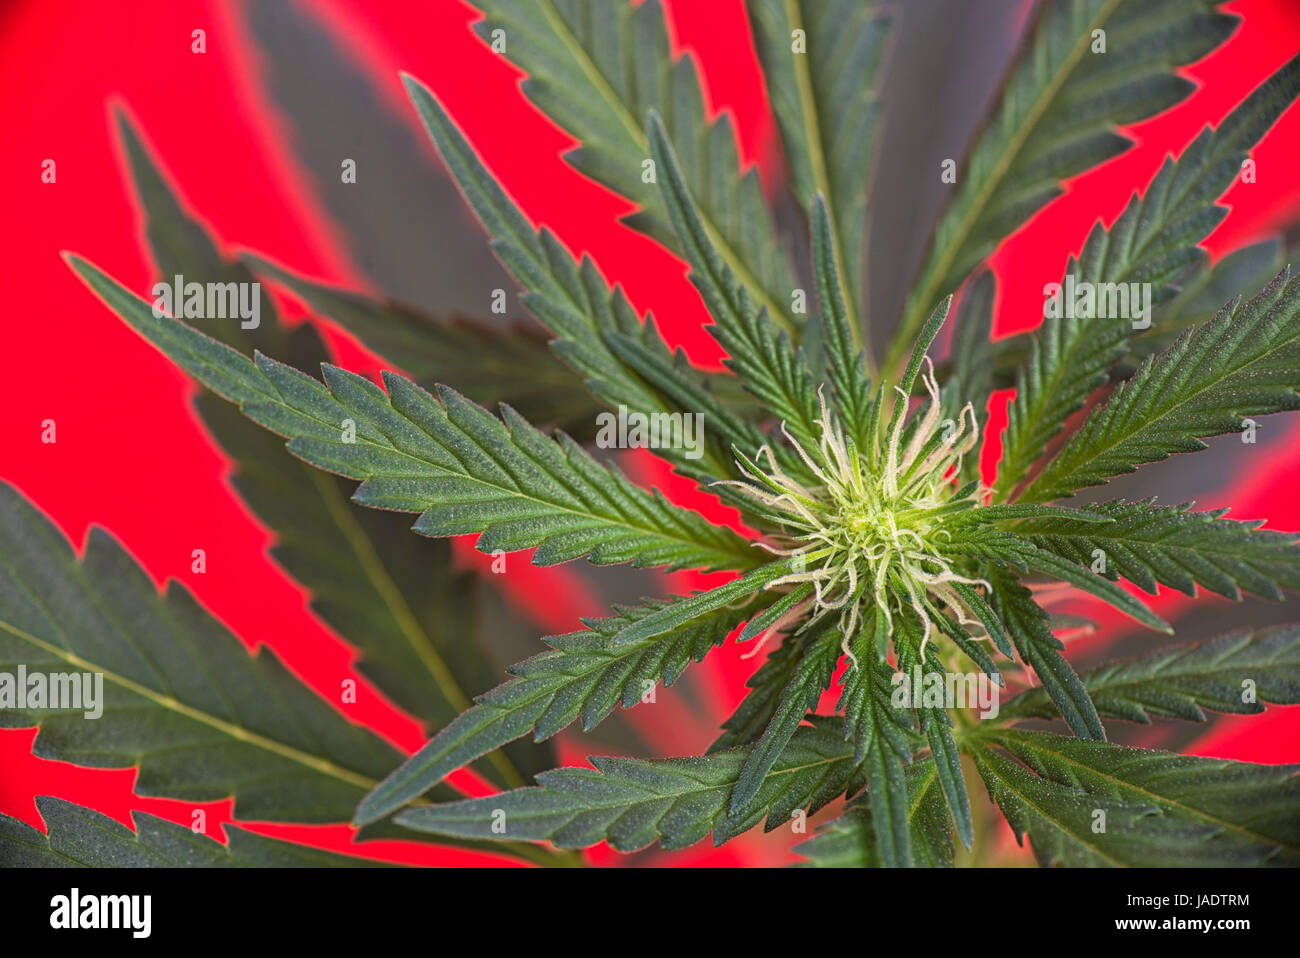 Dettaglio della cannabis cola con peli visibili e lascia su di inizio fase di fioritura - medical marijuana concept Foto Stock